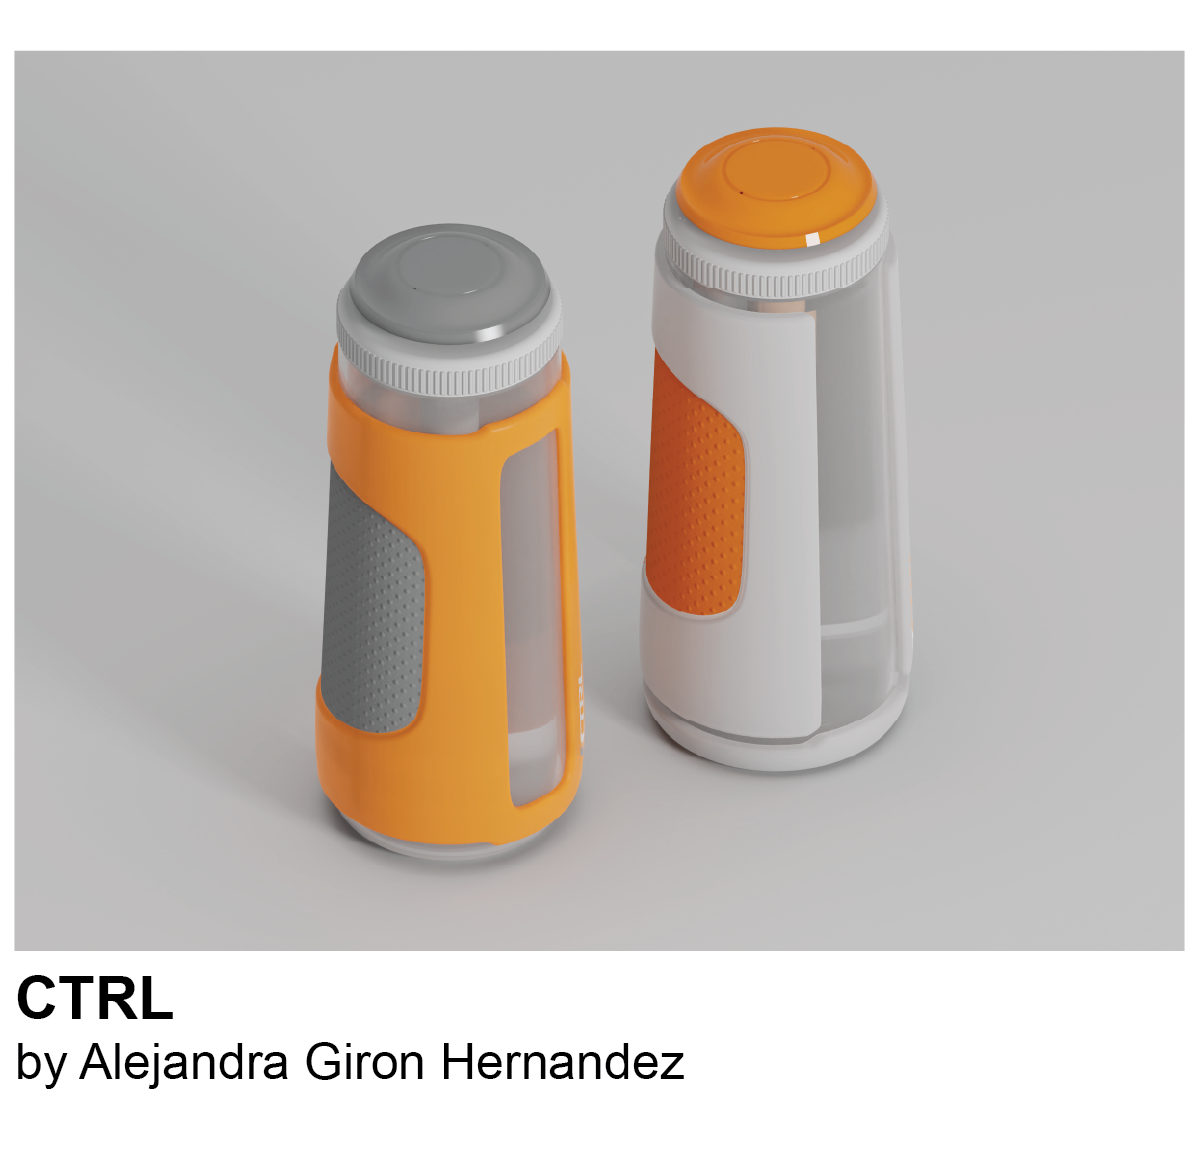 CTRL by Alejandra Giron